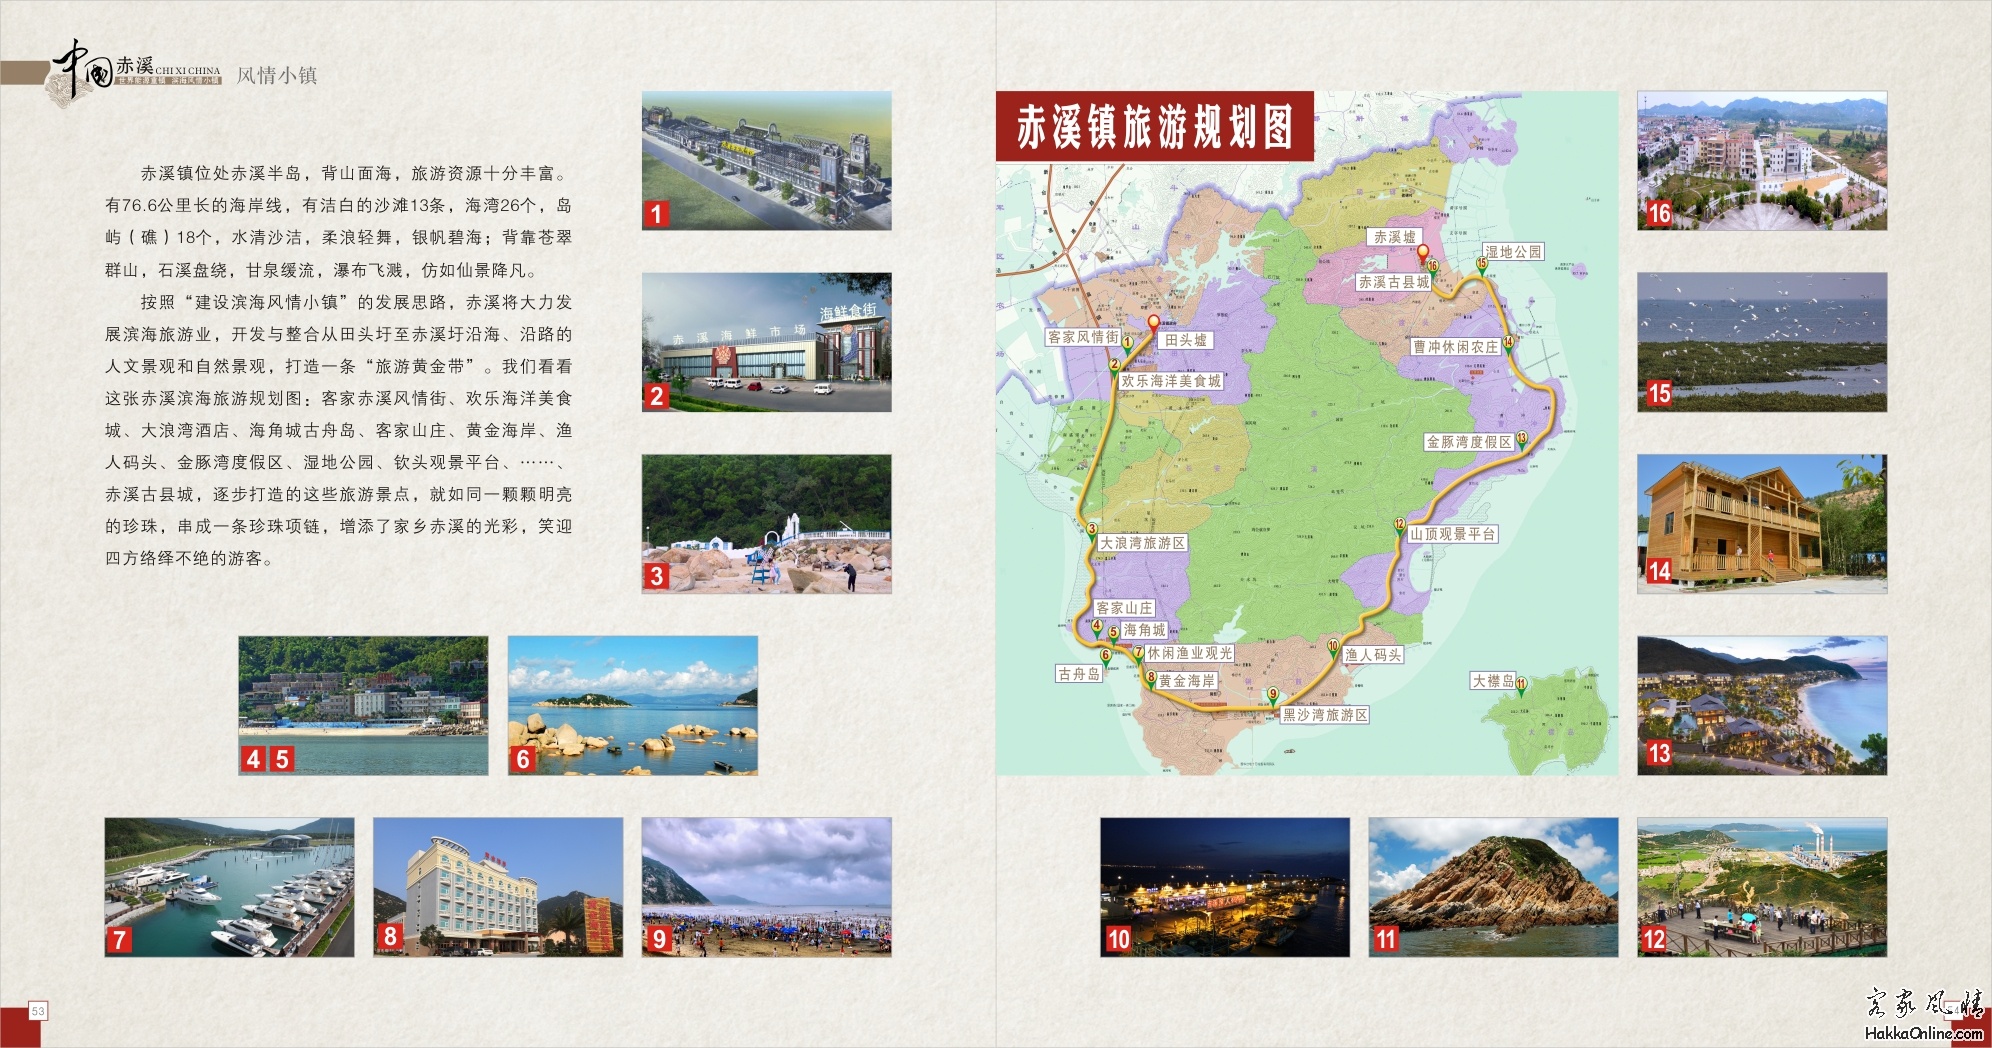 赤溪镇旅游规划图.jpg